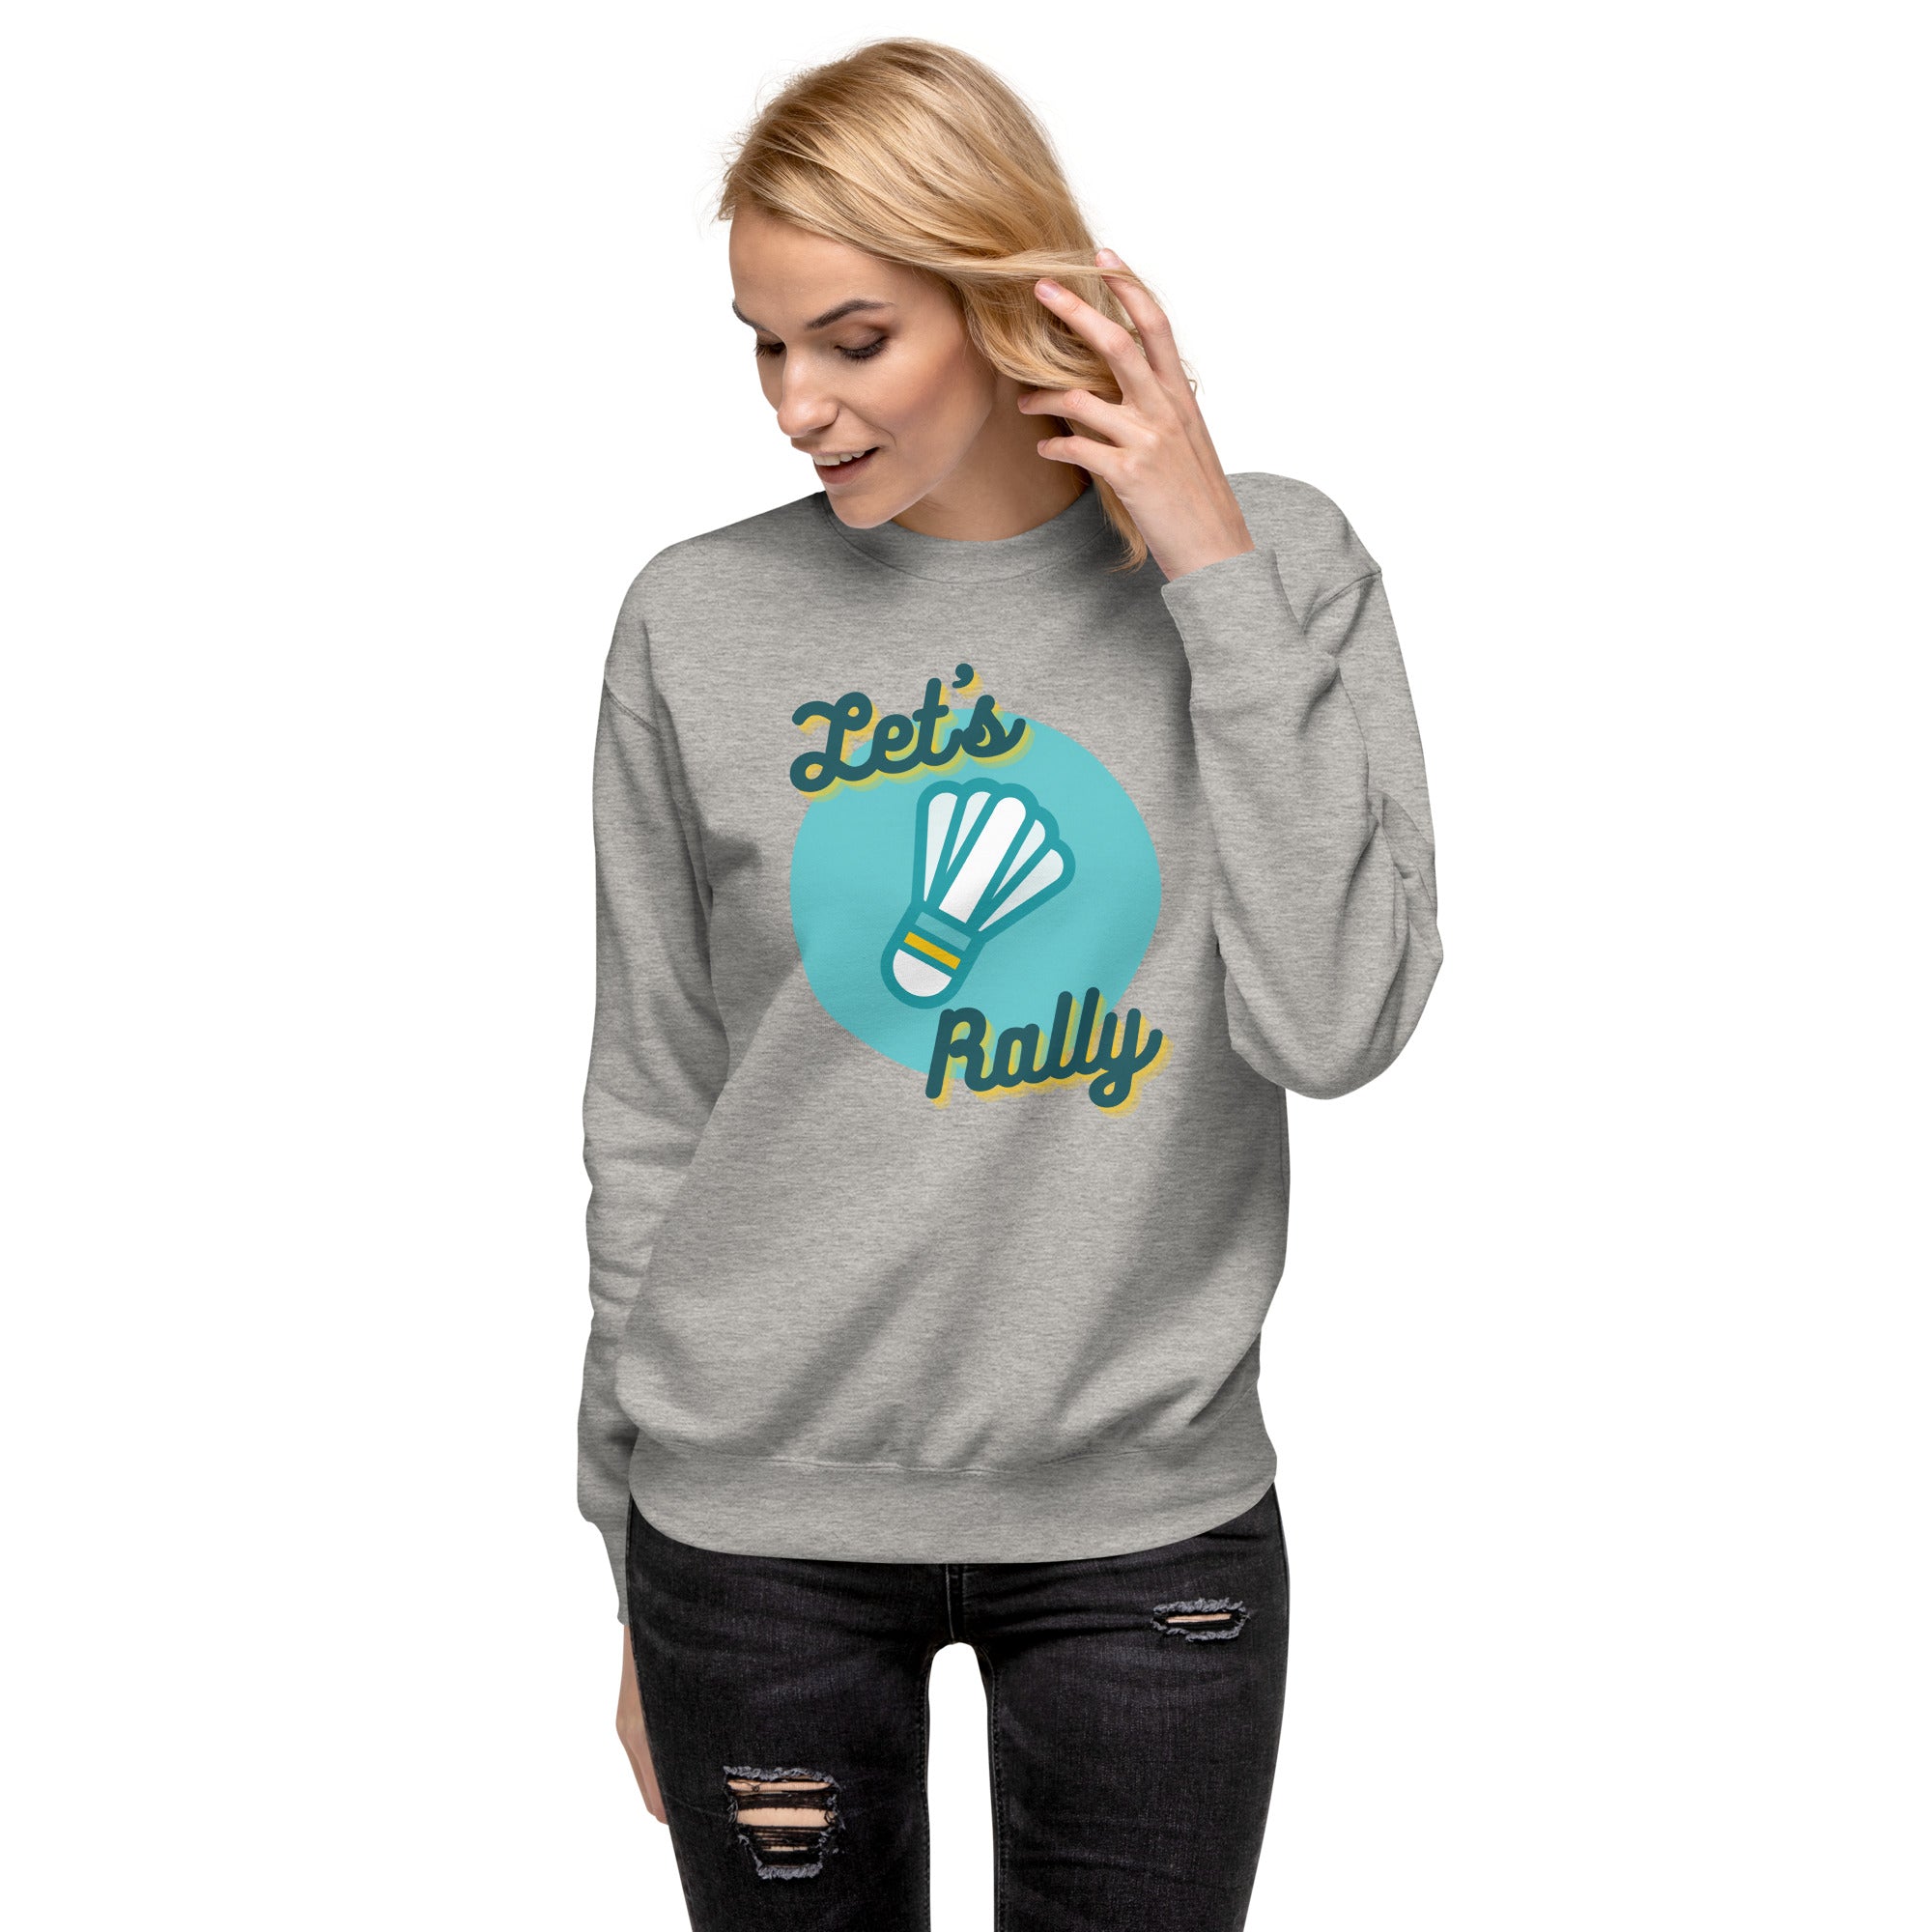 Let's Rally Women's Premium Sweatshirt